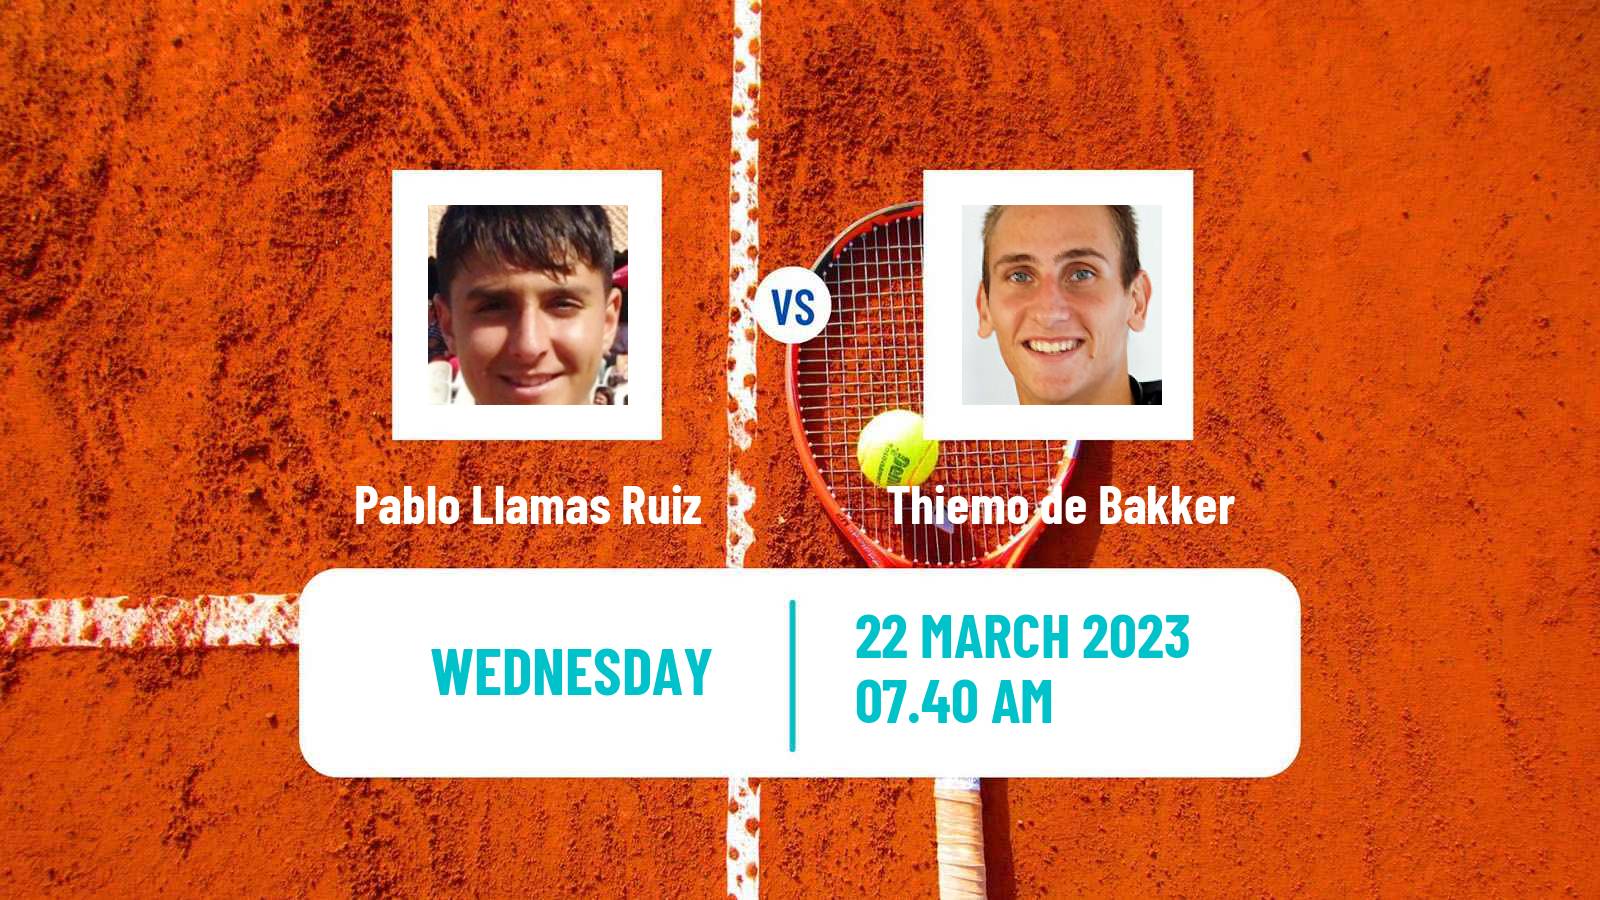 Tennis ITF Tournaments Pablo Llamas Ruiz - Thiemo de Bakker